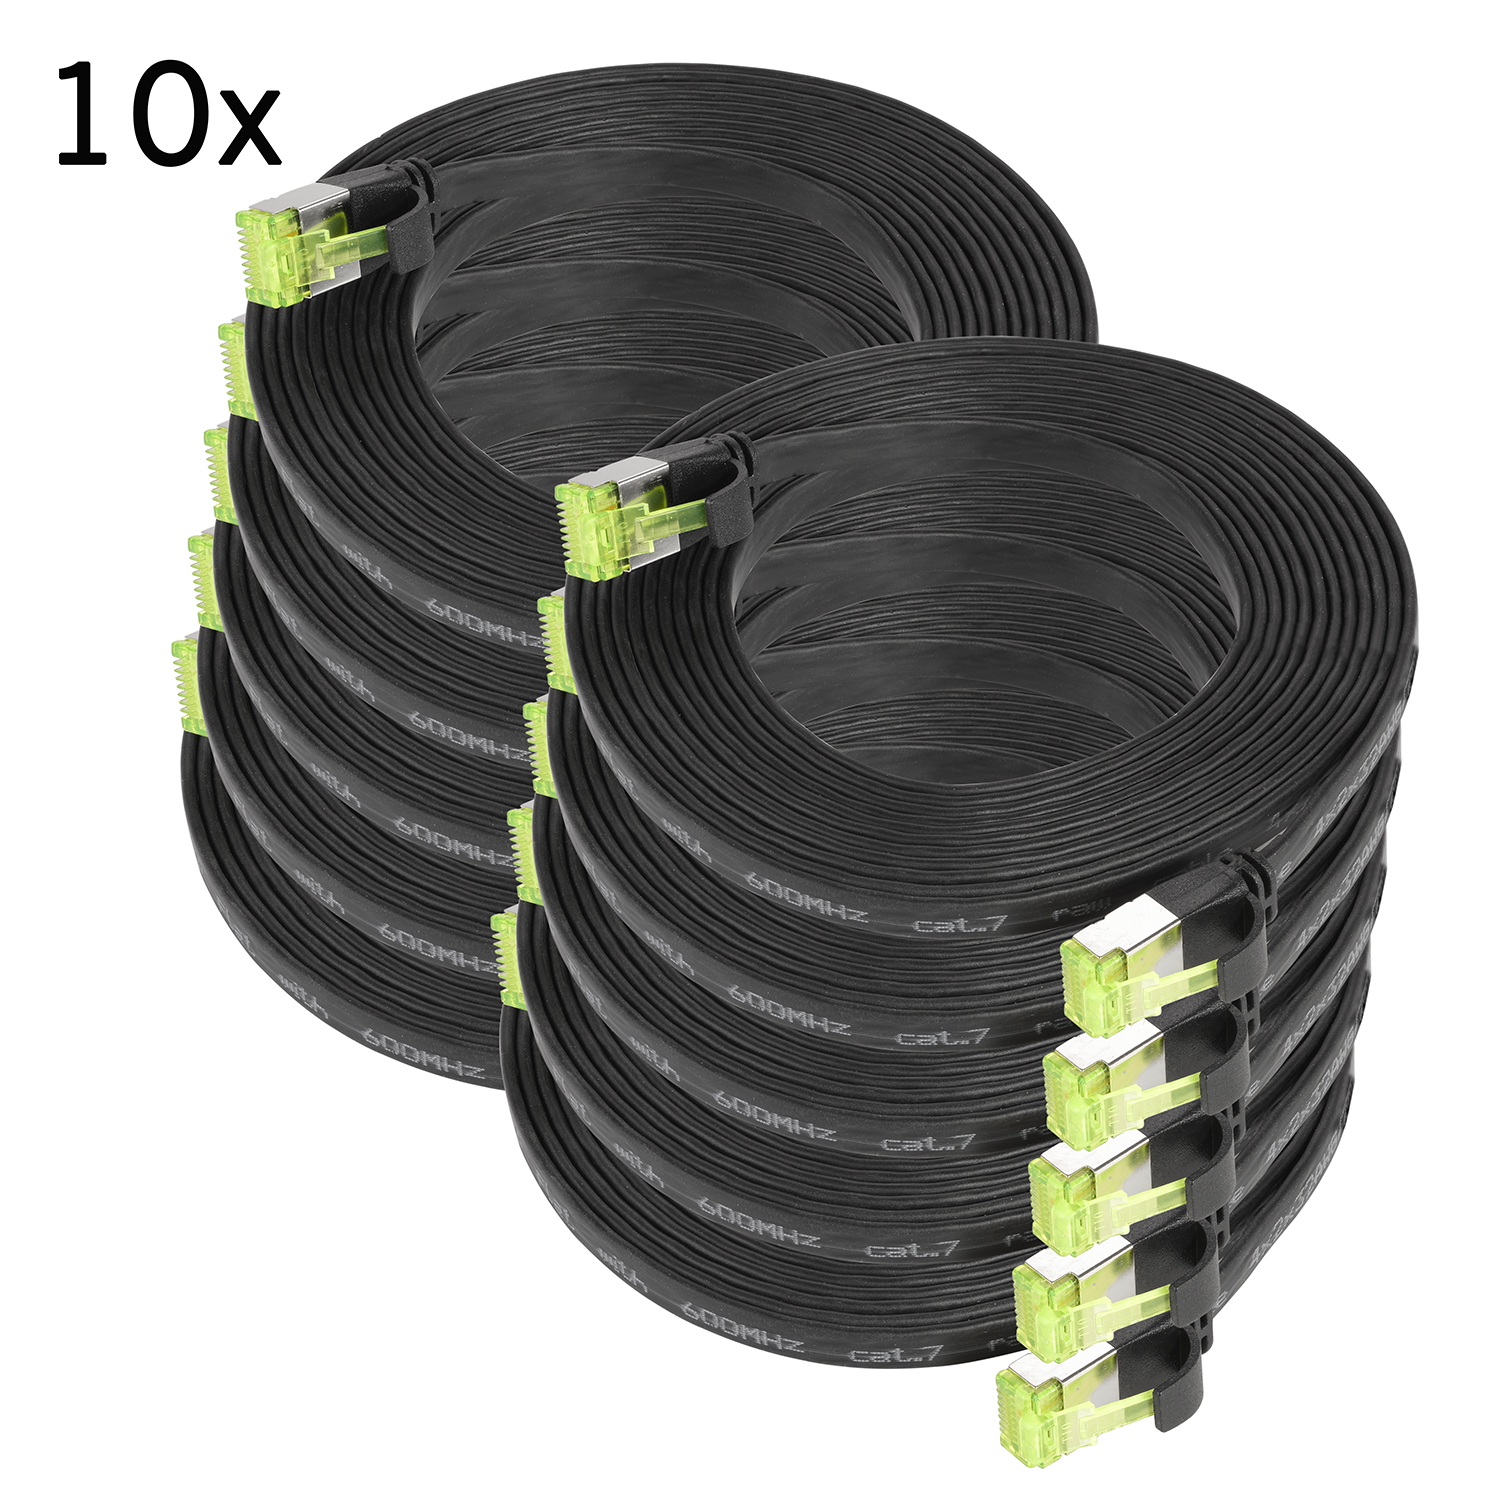 TPFNET 10er U/FTP Netzwerkkabel, schwarz, Pack 5m m / GBit, Patchkabel Flachkabel 10 5